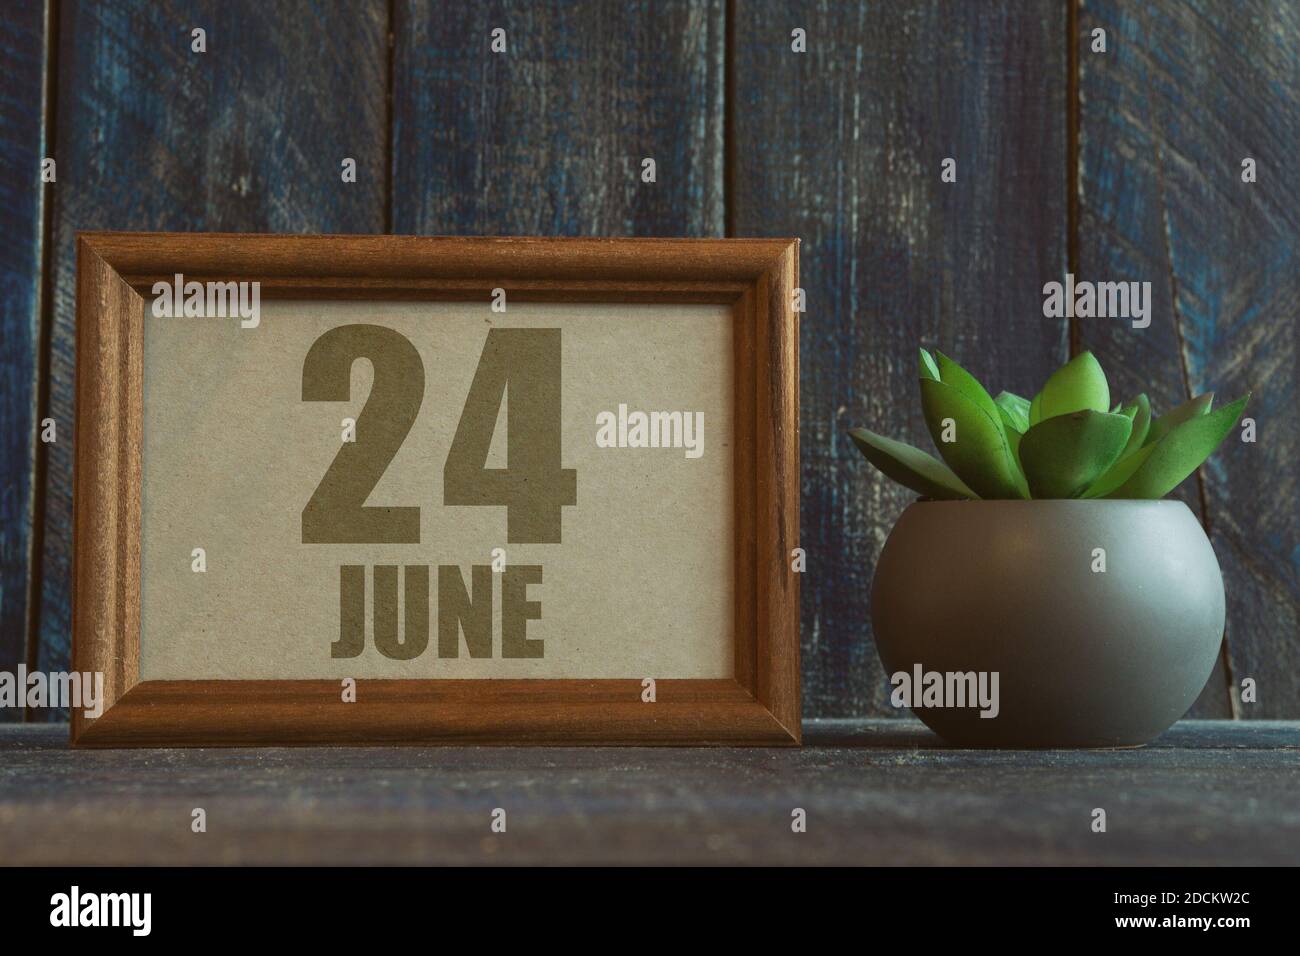 juni 24th. Tag 24 des Monats, Datum im Rahmen neben Sukkulenten auf hölzernen Hintergrund Sommermonat, Tag des Jahres Konzept Stockfoto